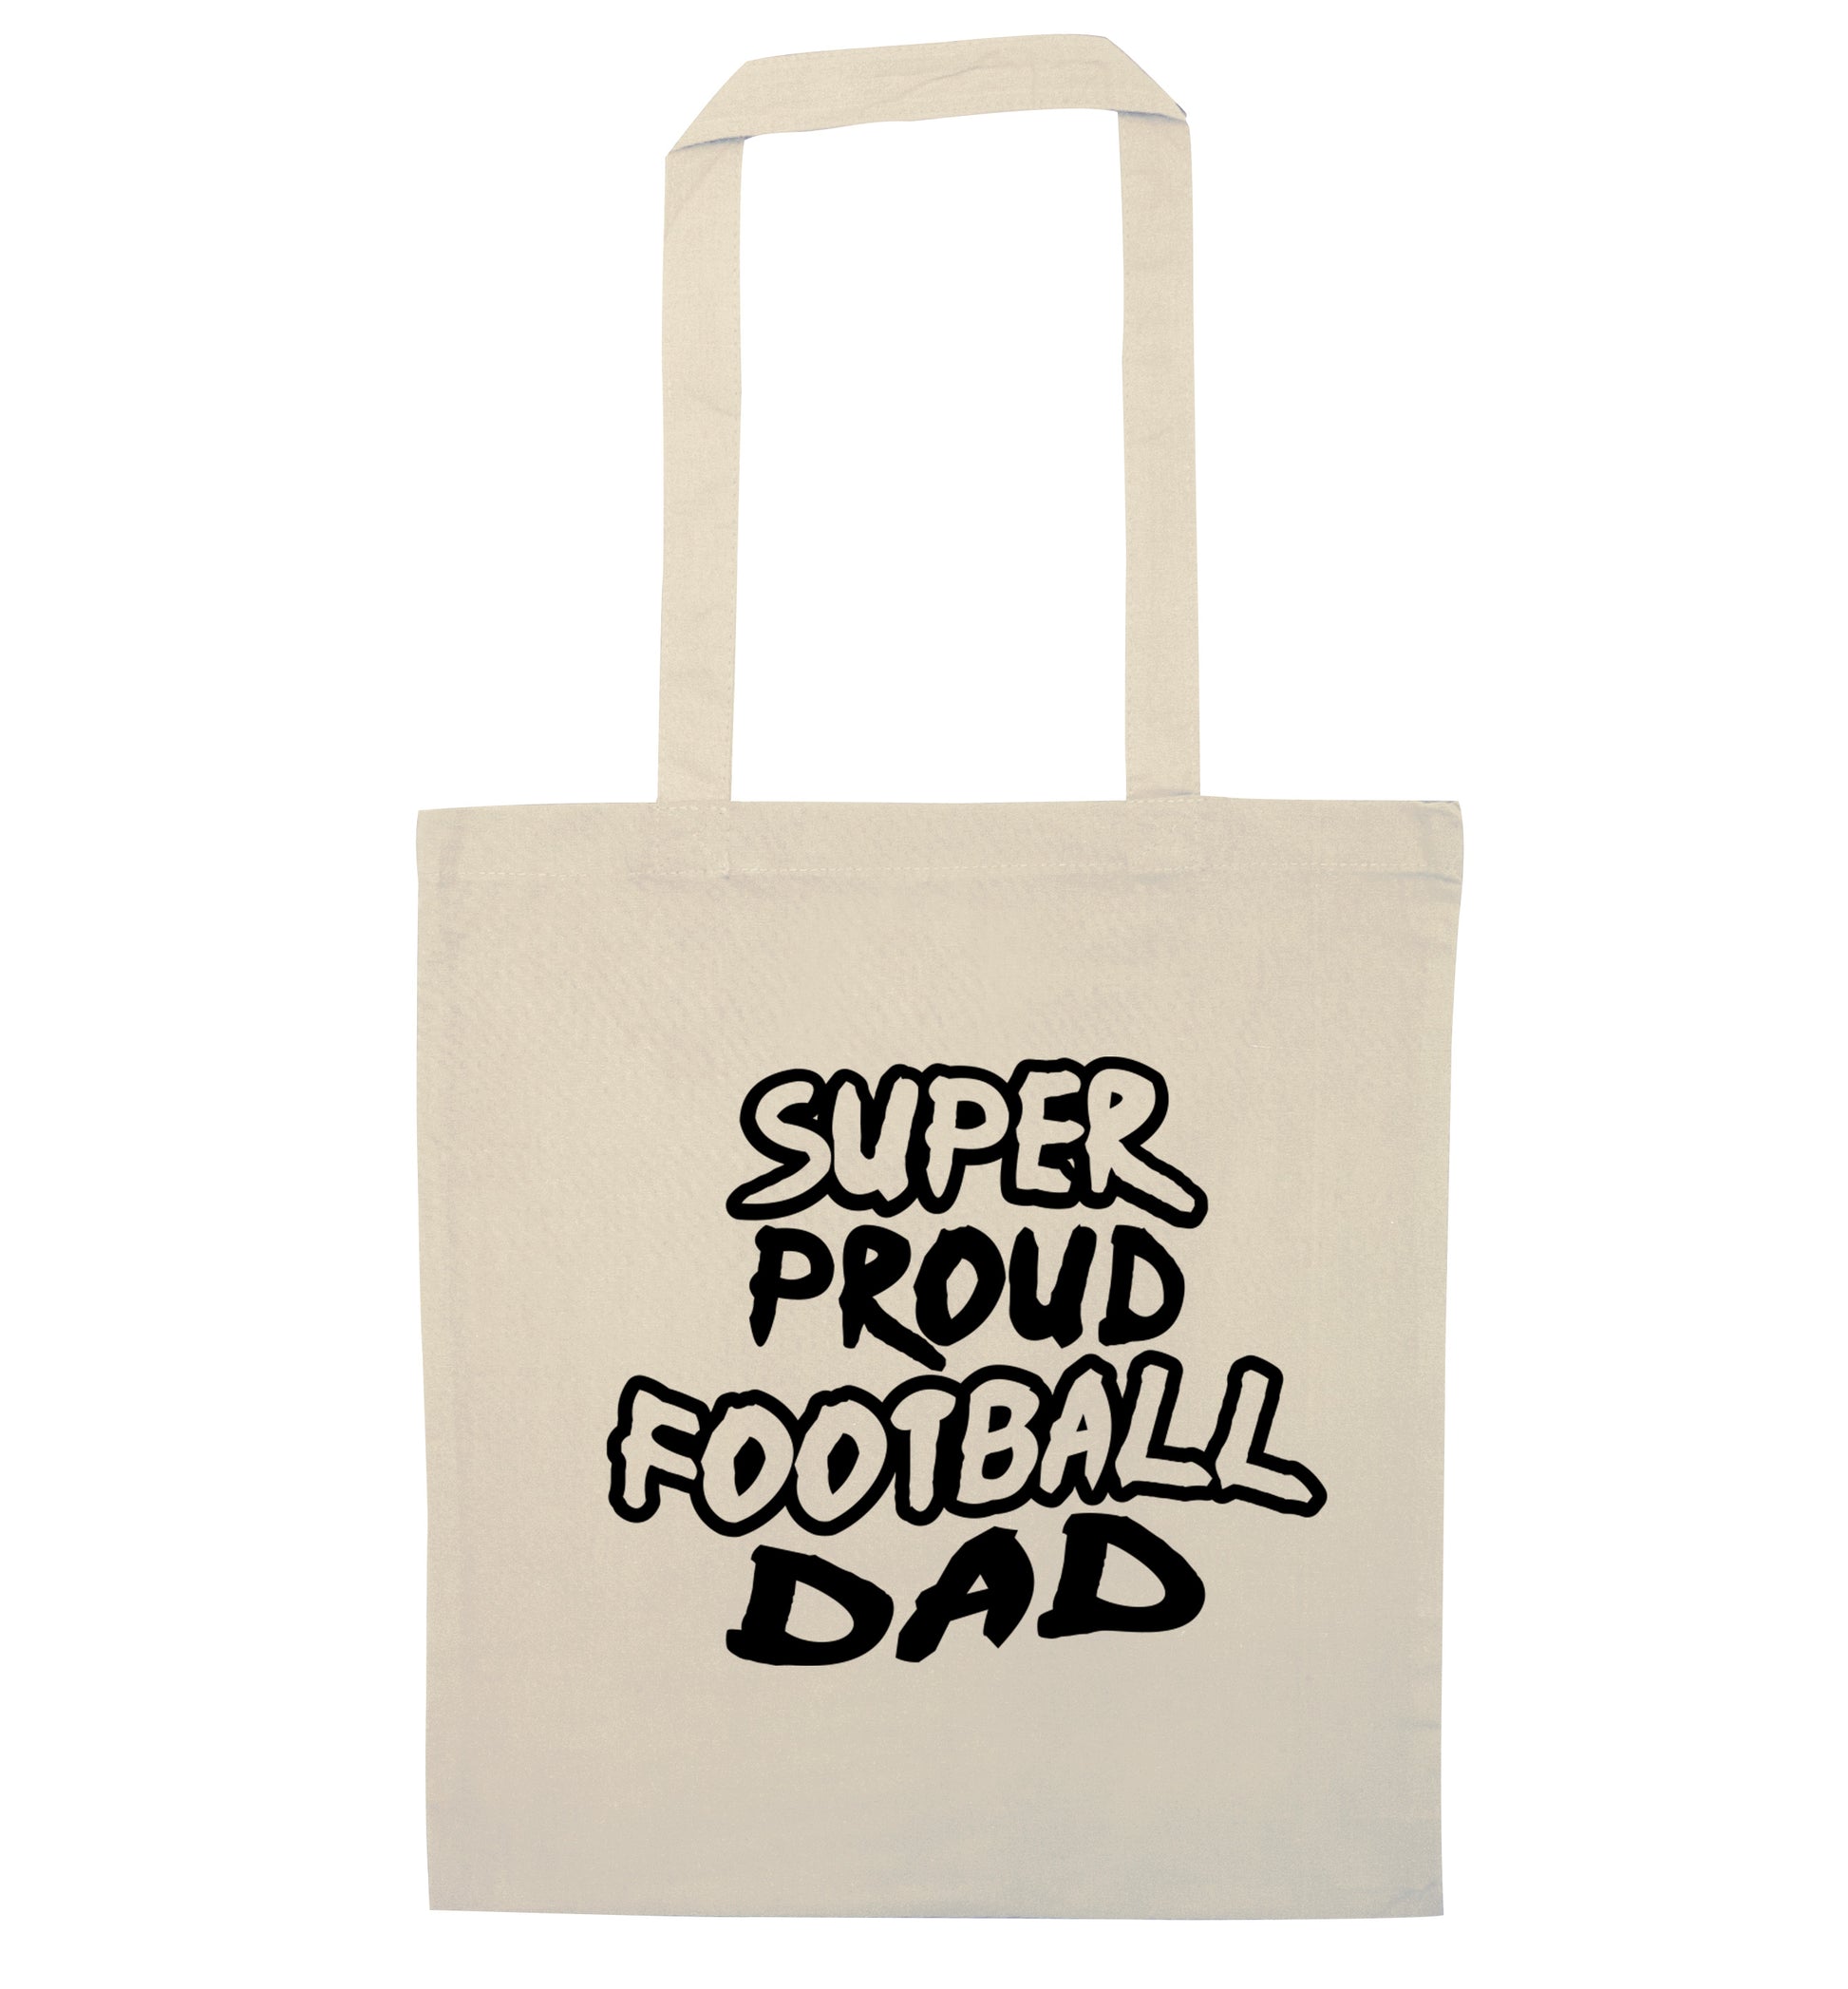 Super proud football dad natural tote bag